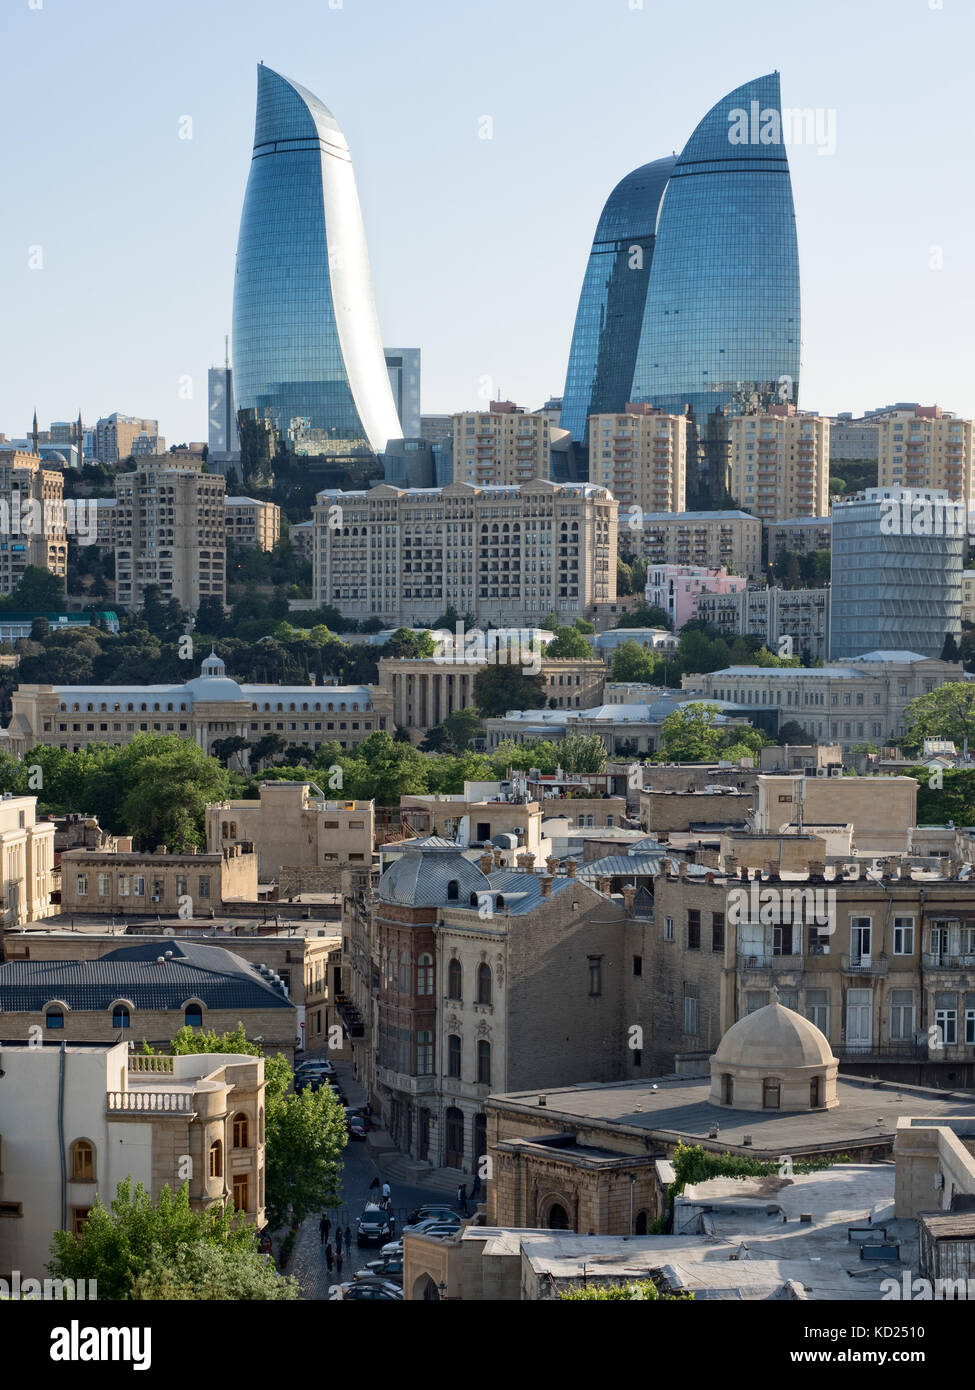 Flame towers dominating Baku skyline, Azerbaijan Stock Photo